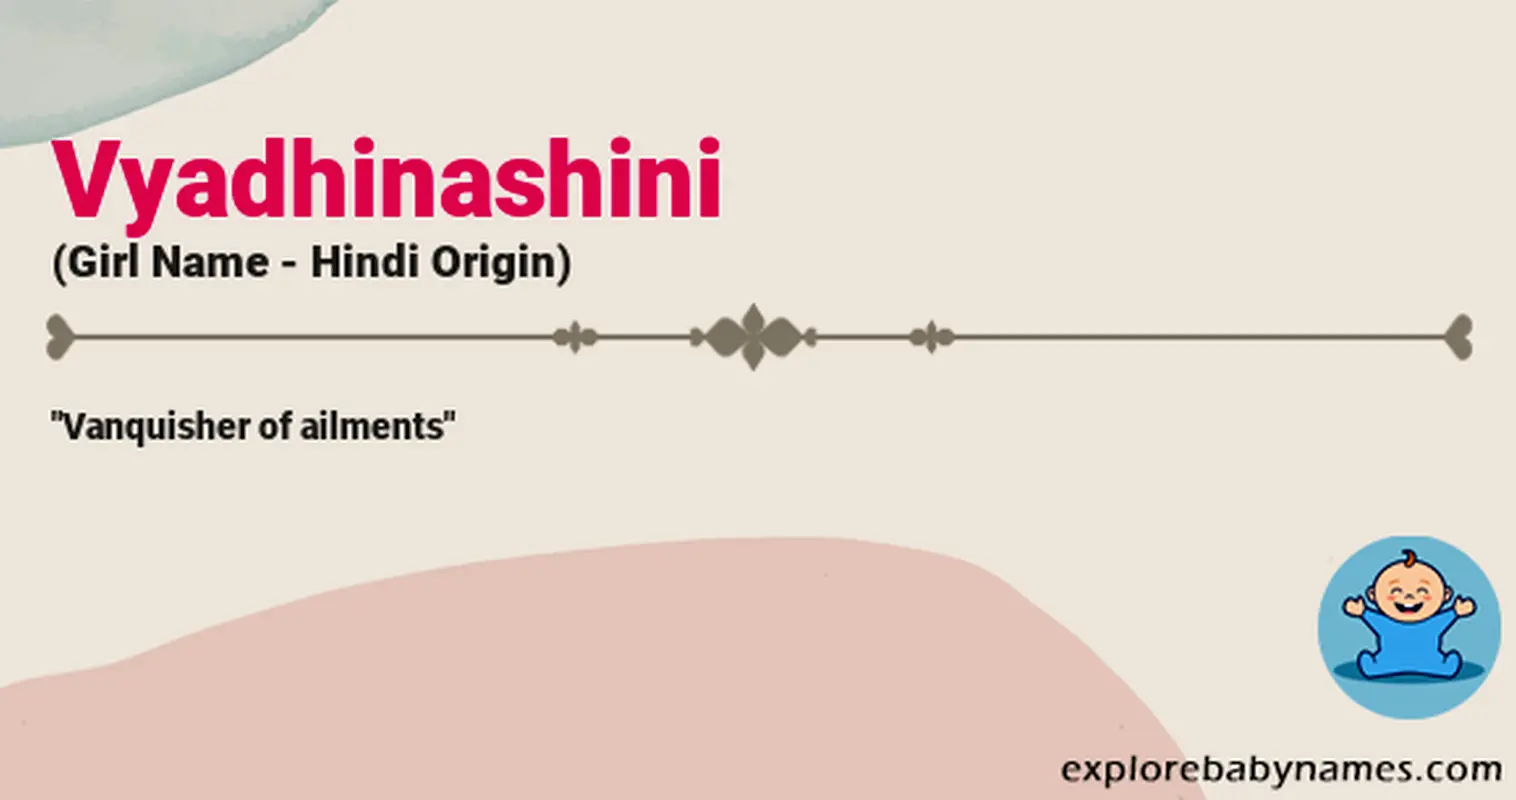 Meaning of Vyadhinashini